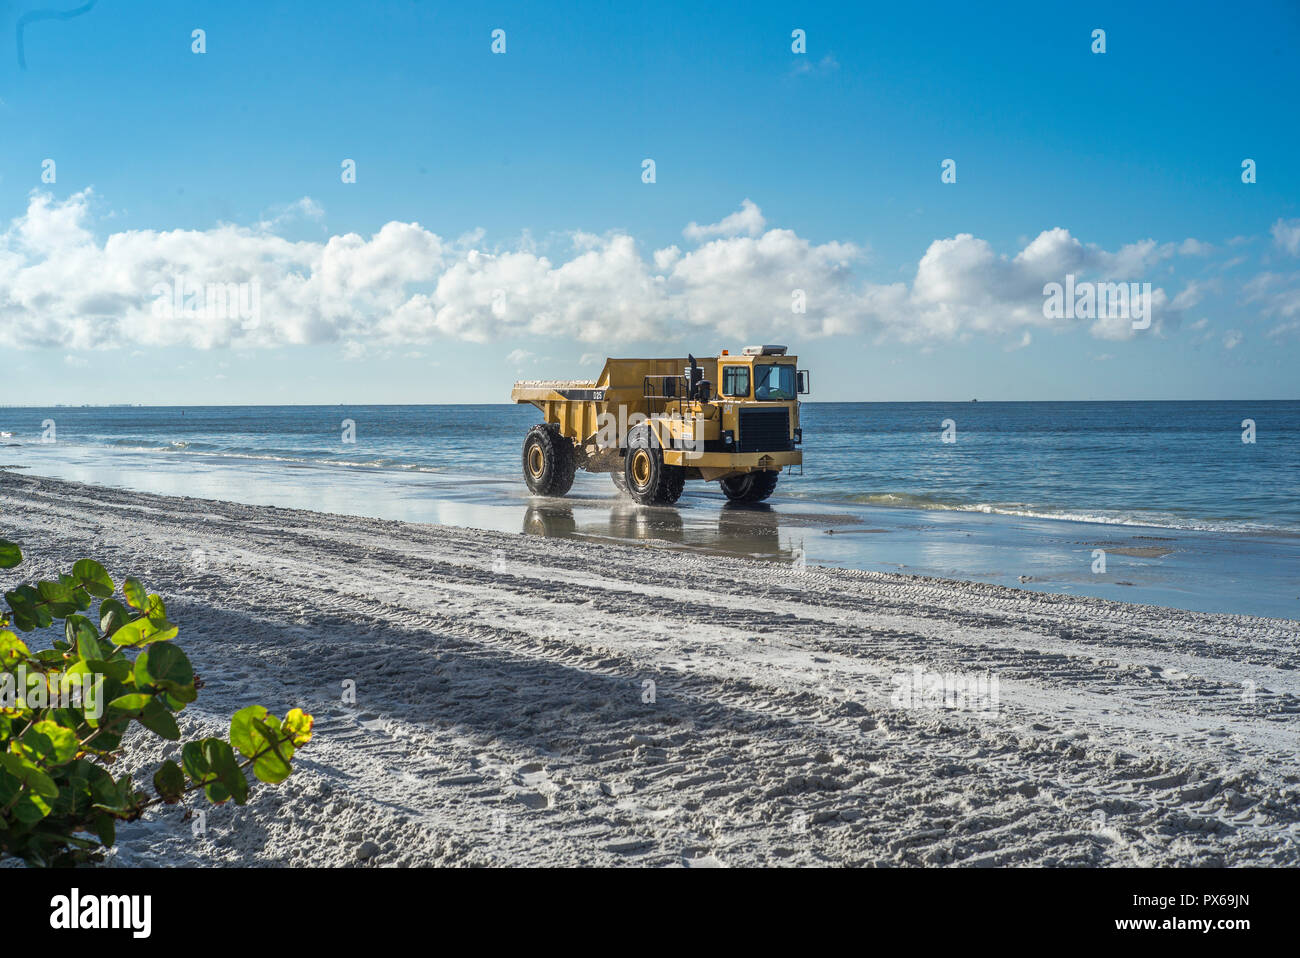 Redington Beach, Pinellas County, Florida, USA., Freitag, 19 Oktober, 2018, Strand Lagerauffüllung, Verteilung der neuen, Sand auf den Strand, vorland Stockfoto